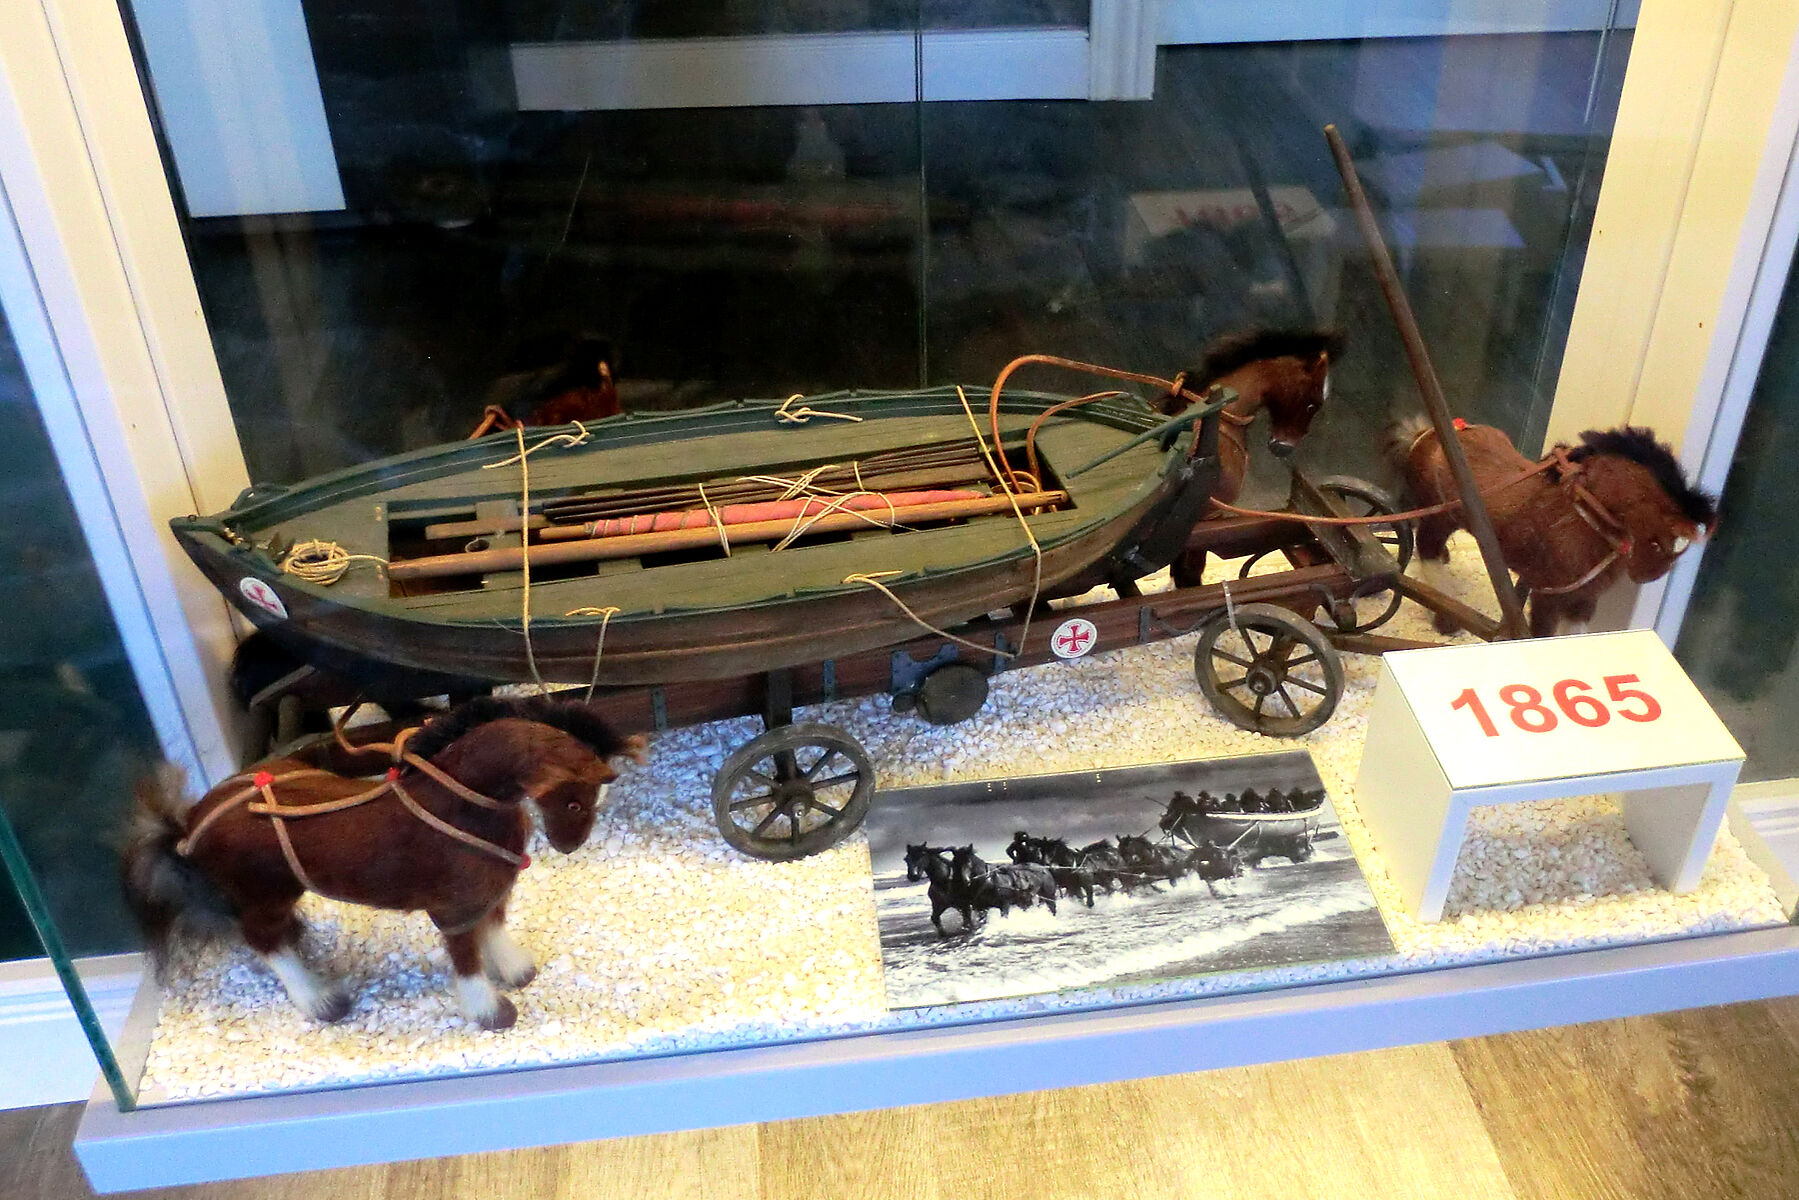 Modell eines alten Seenotrettungsboots, das von Pferden gezogen wird